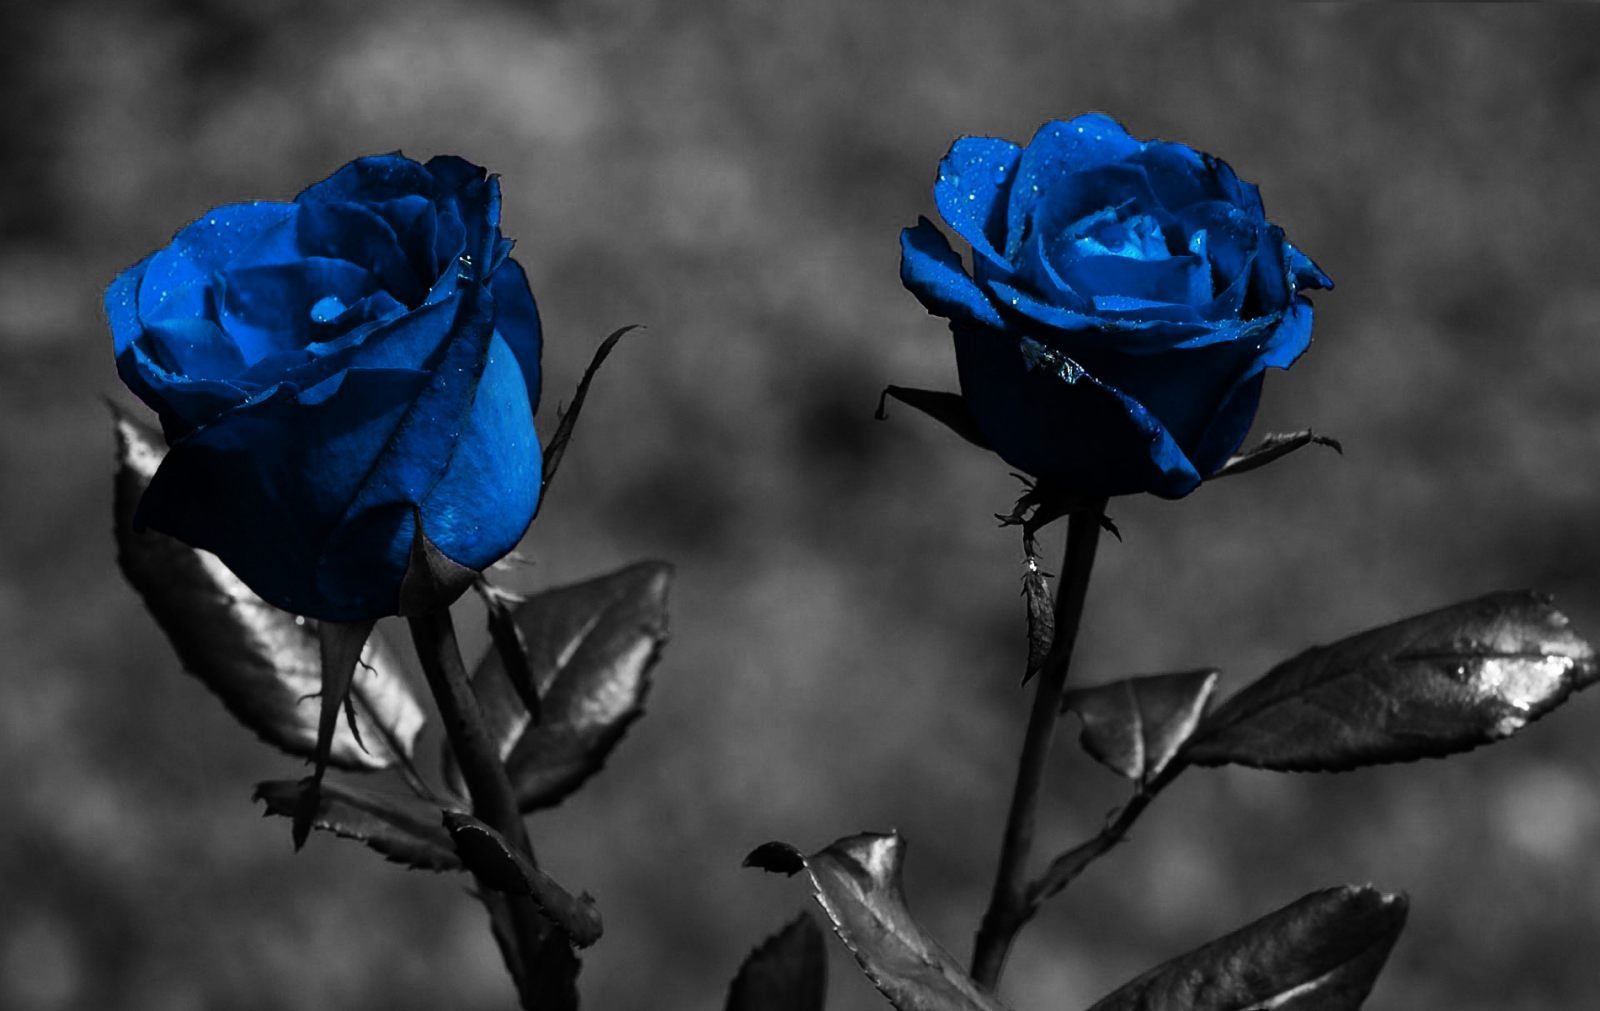 Wallpaper de rosas azules